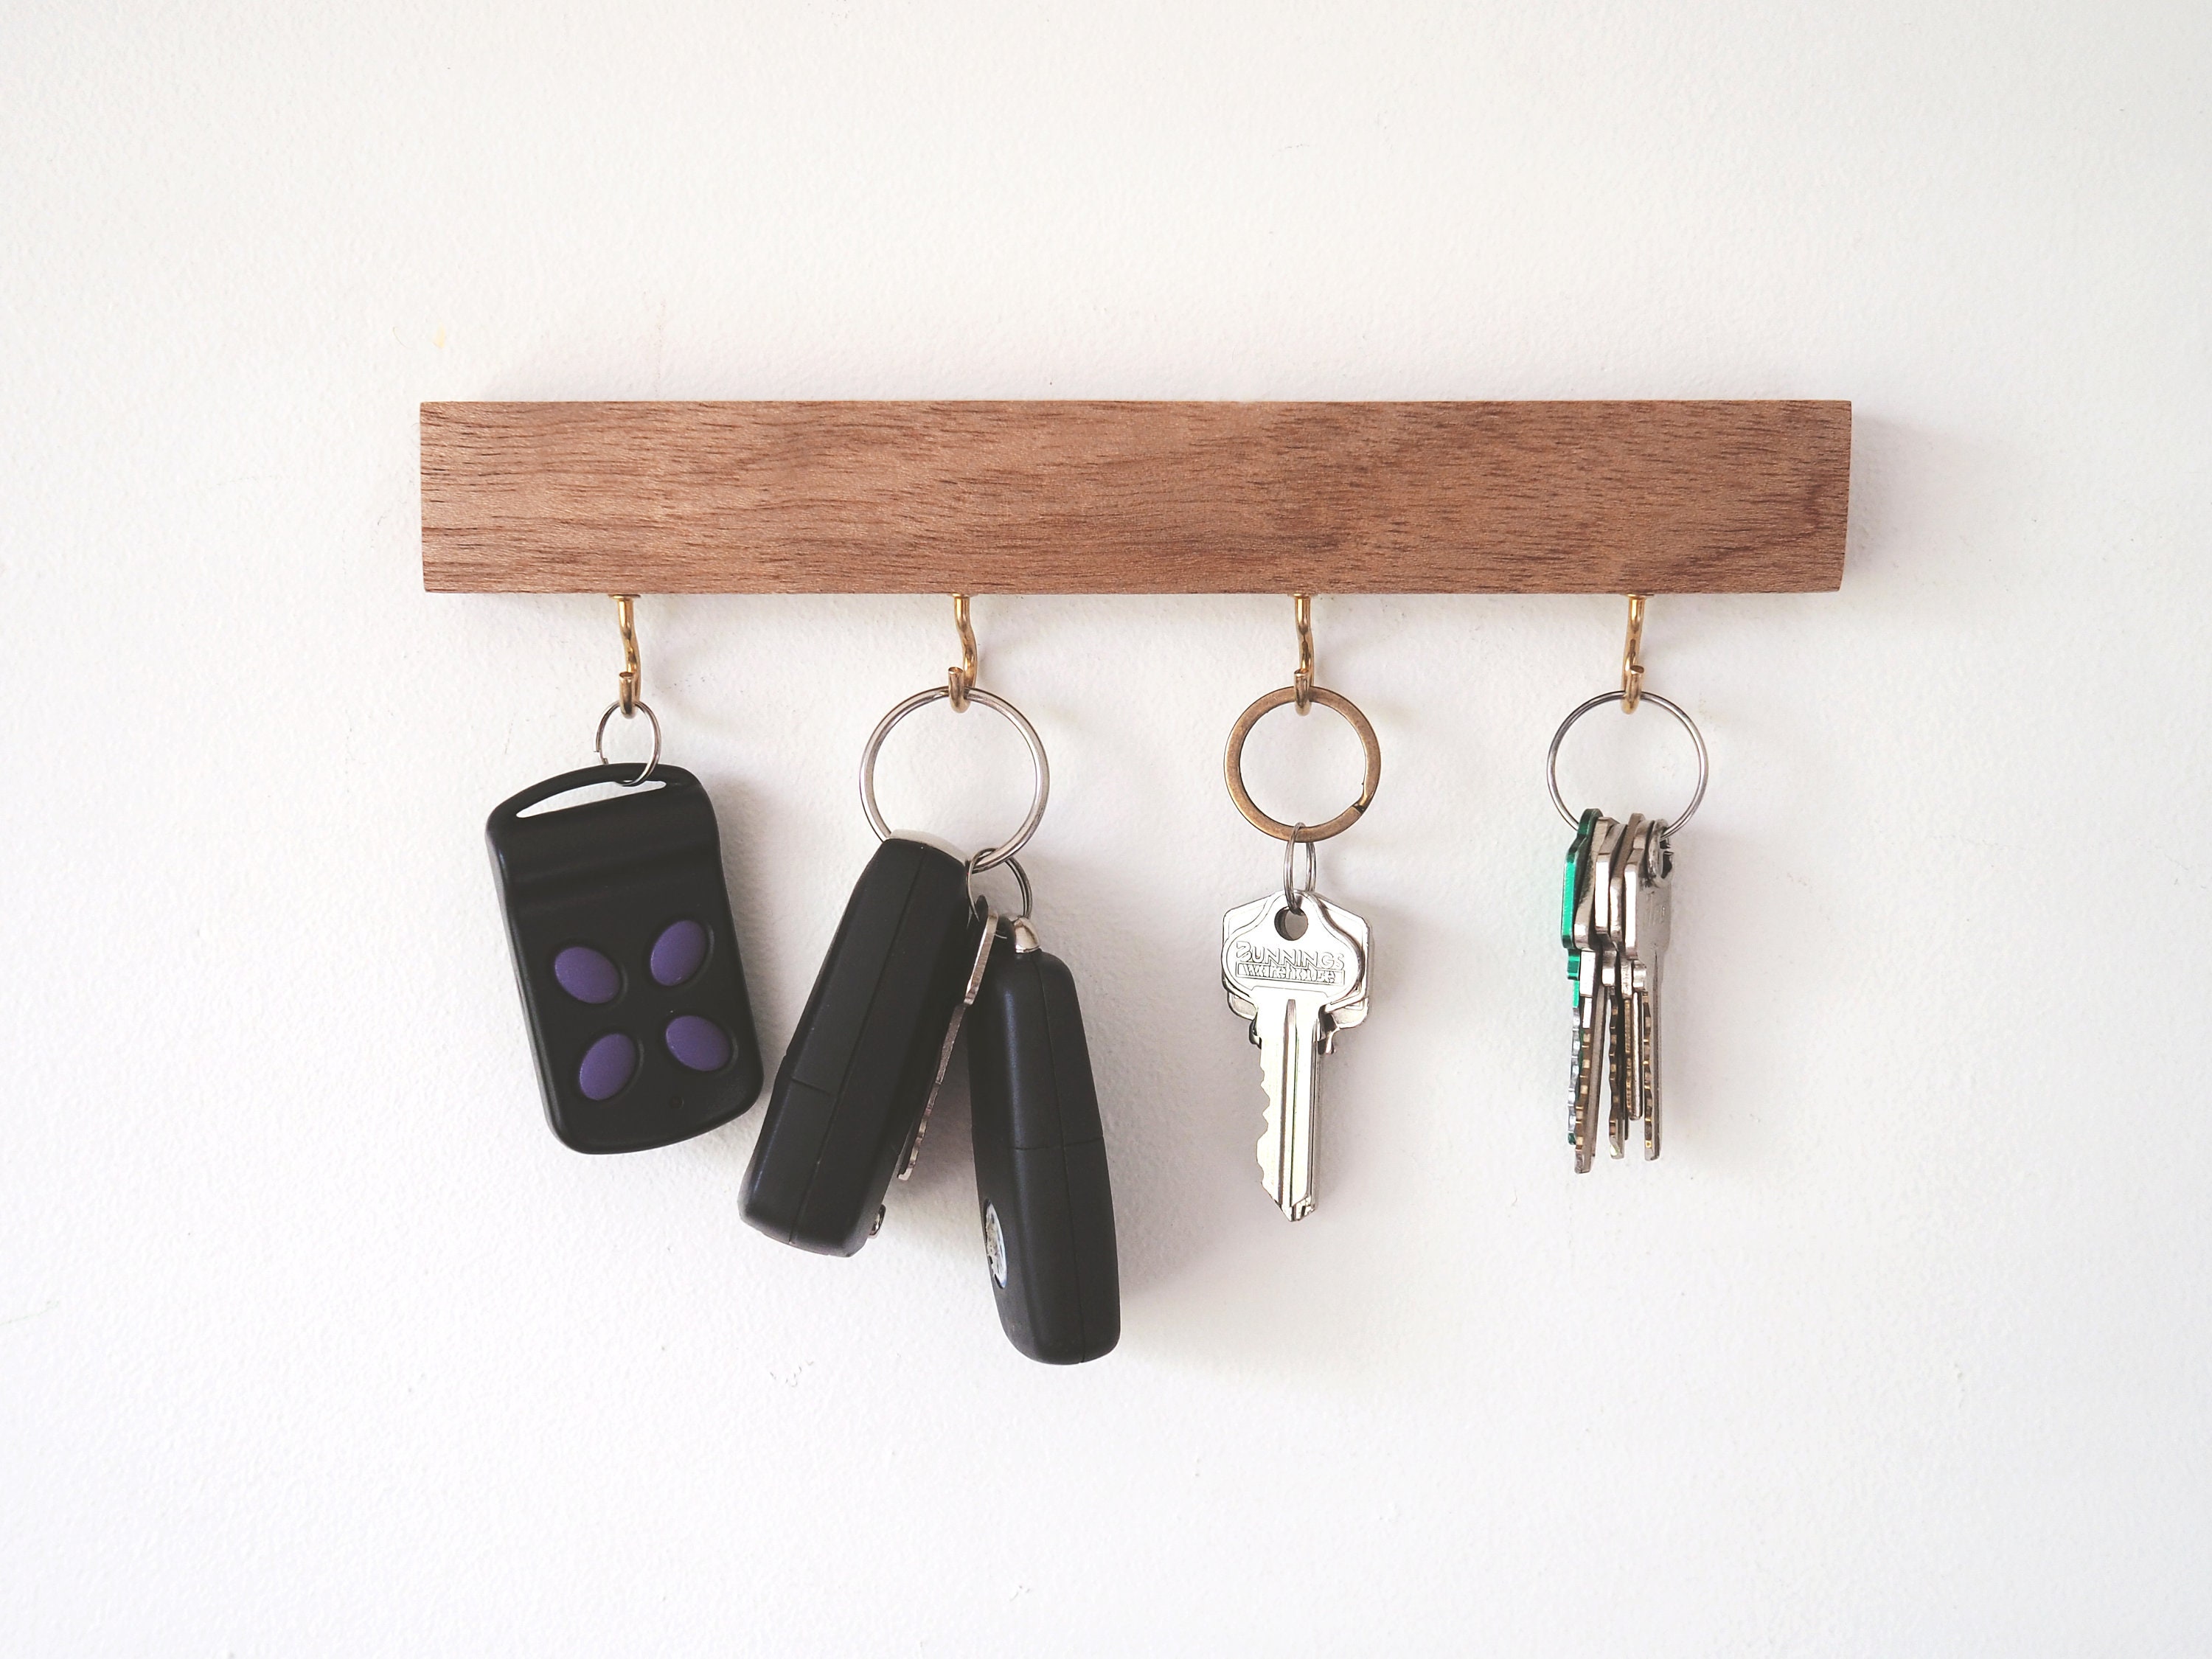 Haken Schlüsselhalter für Wand Vatertagsgeschenk, Schlüsselablage